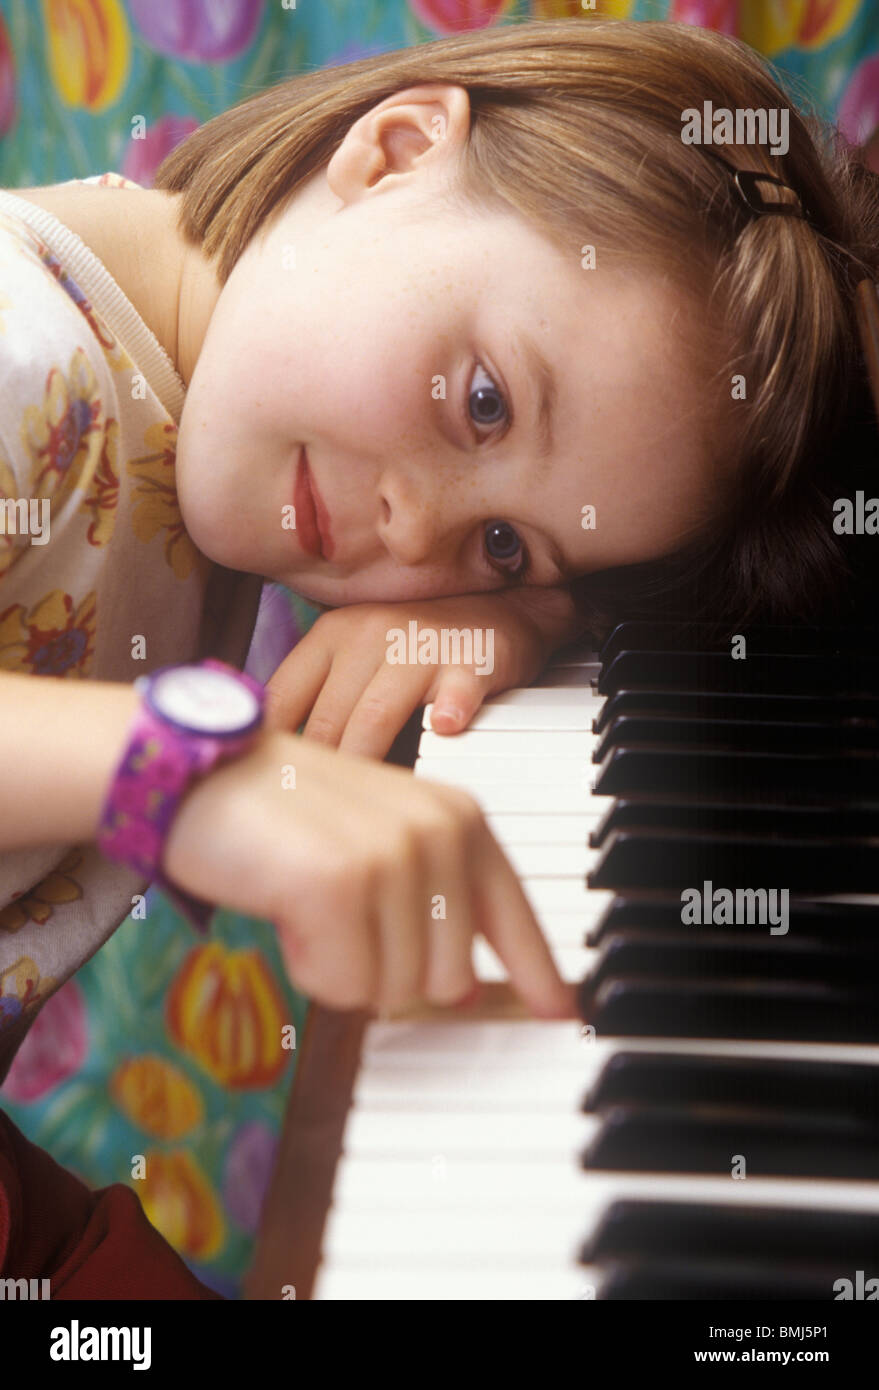 Petite fille assise avec la tête sur les touches de piano jouant un air  Photo Stock - Alamy